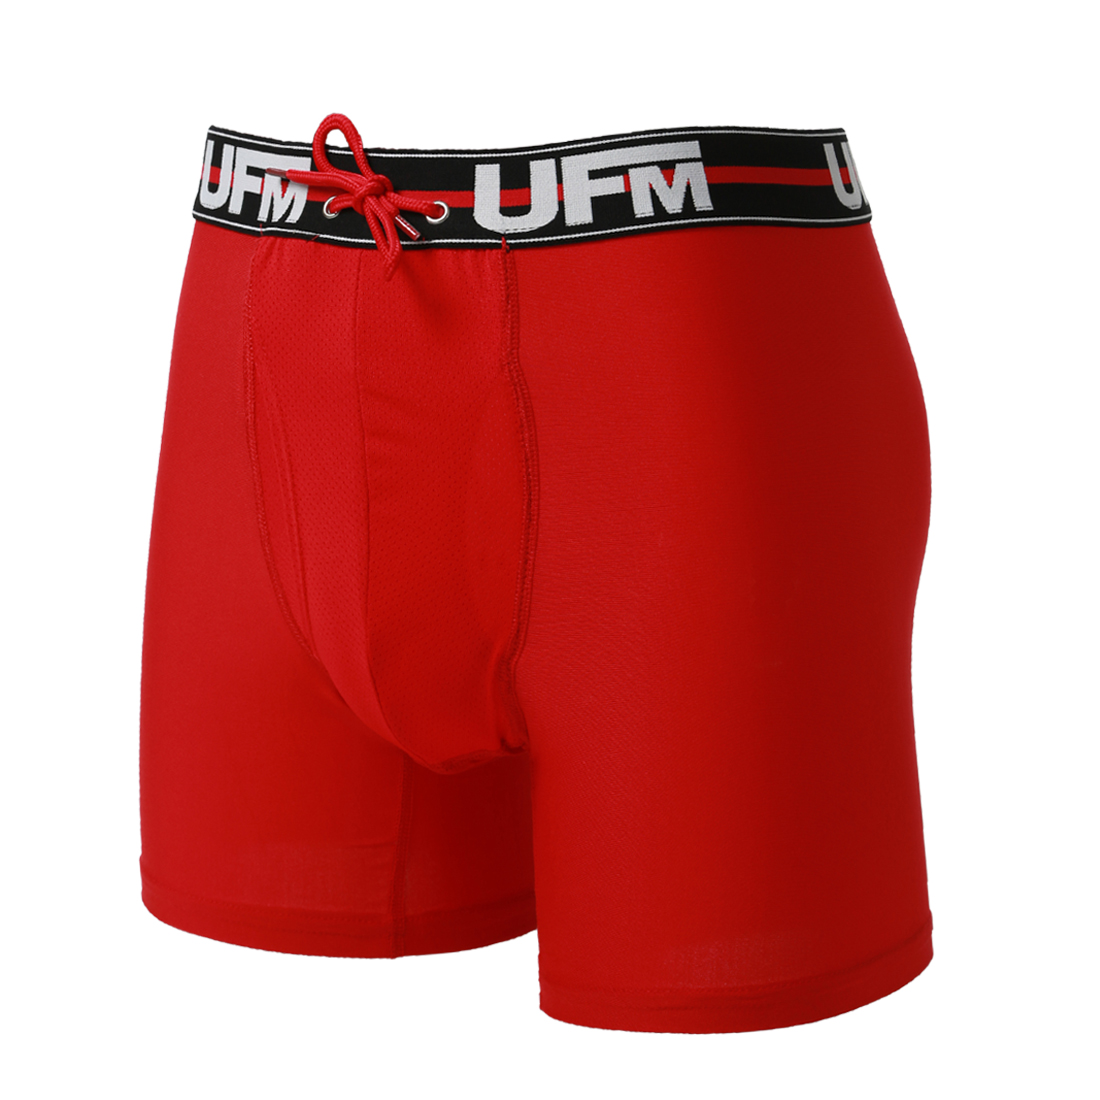 Parent UFM Underwear for Men Work Polyester 6 inch Original Max Boxer Brief Red 800